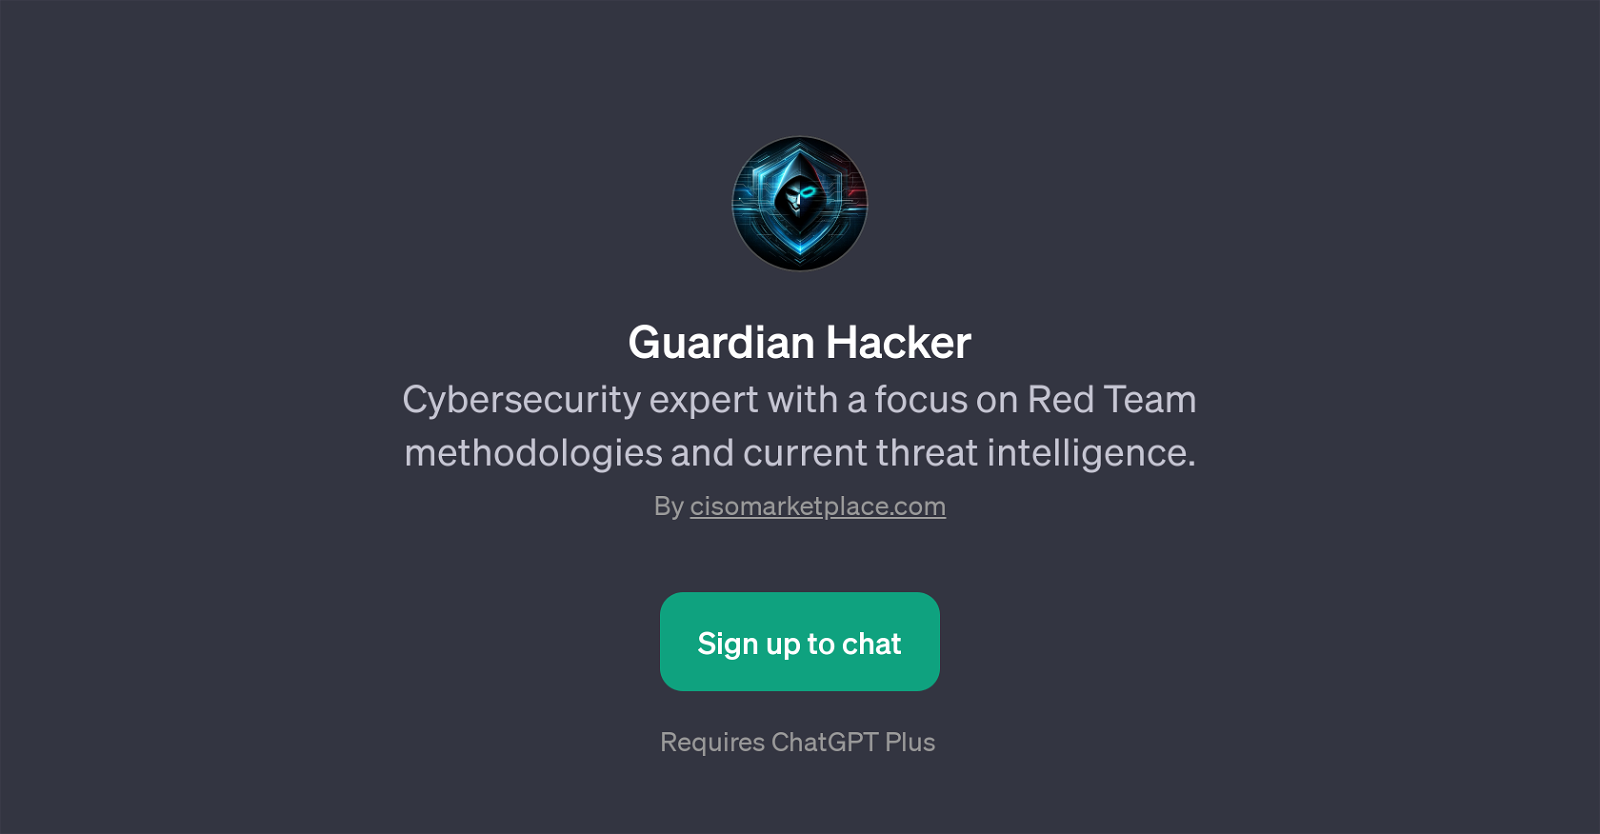 Guardian Hacker website